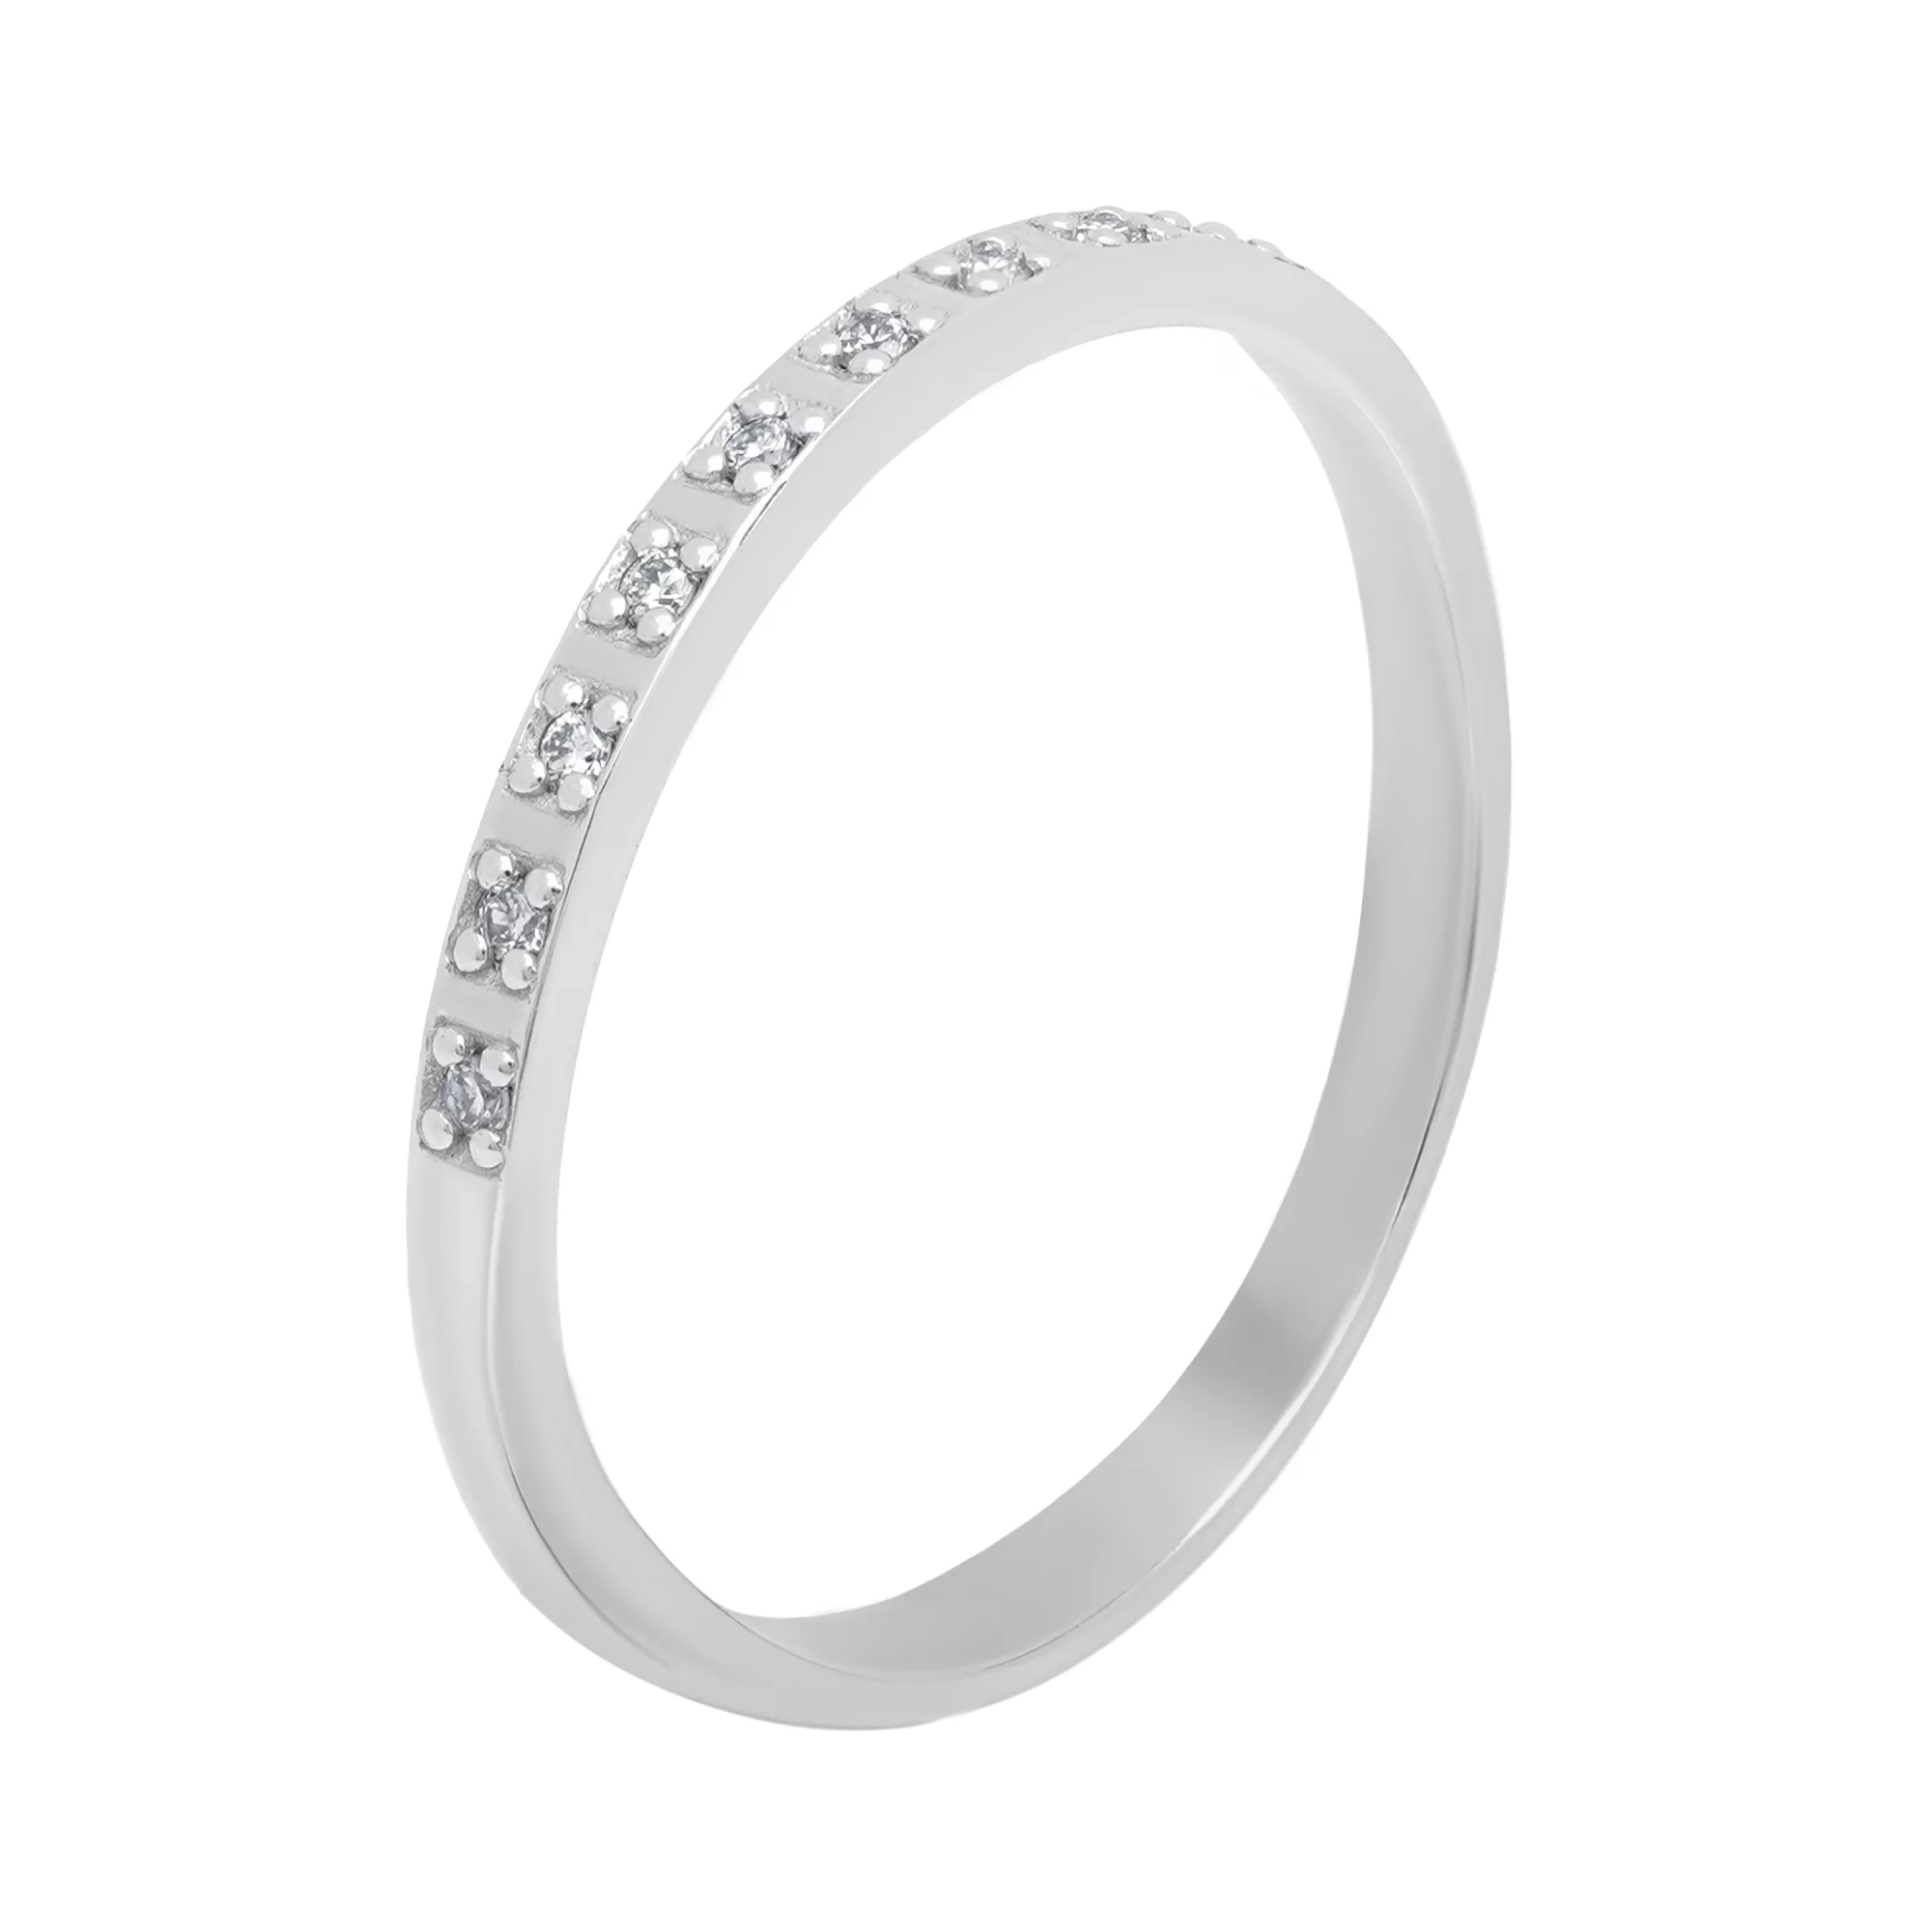 Тонкое кольцо с дорожкой бриллиантов из белого золота - 1644743 – изображение 1